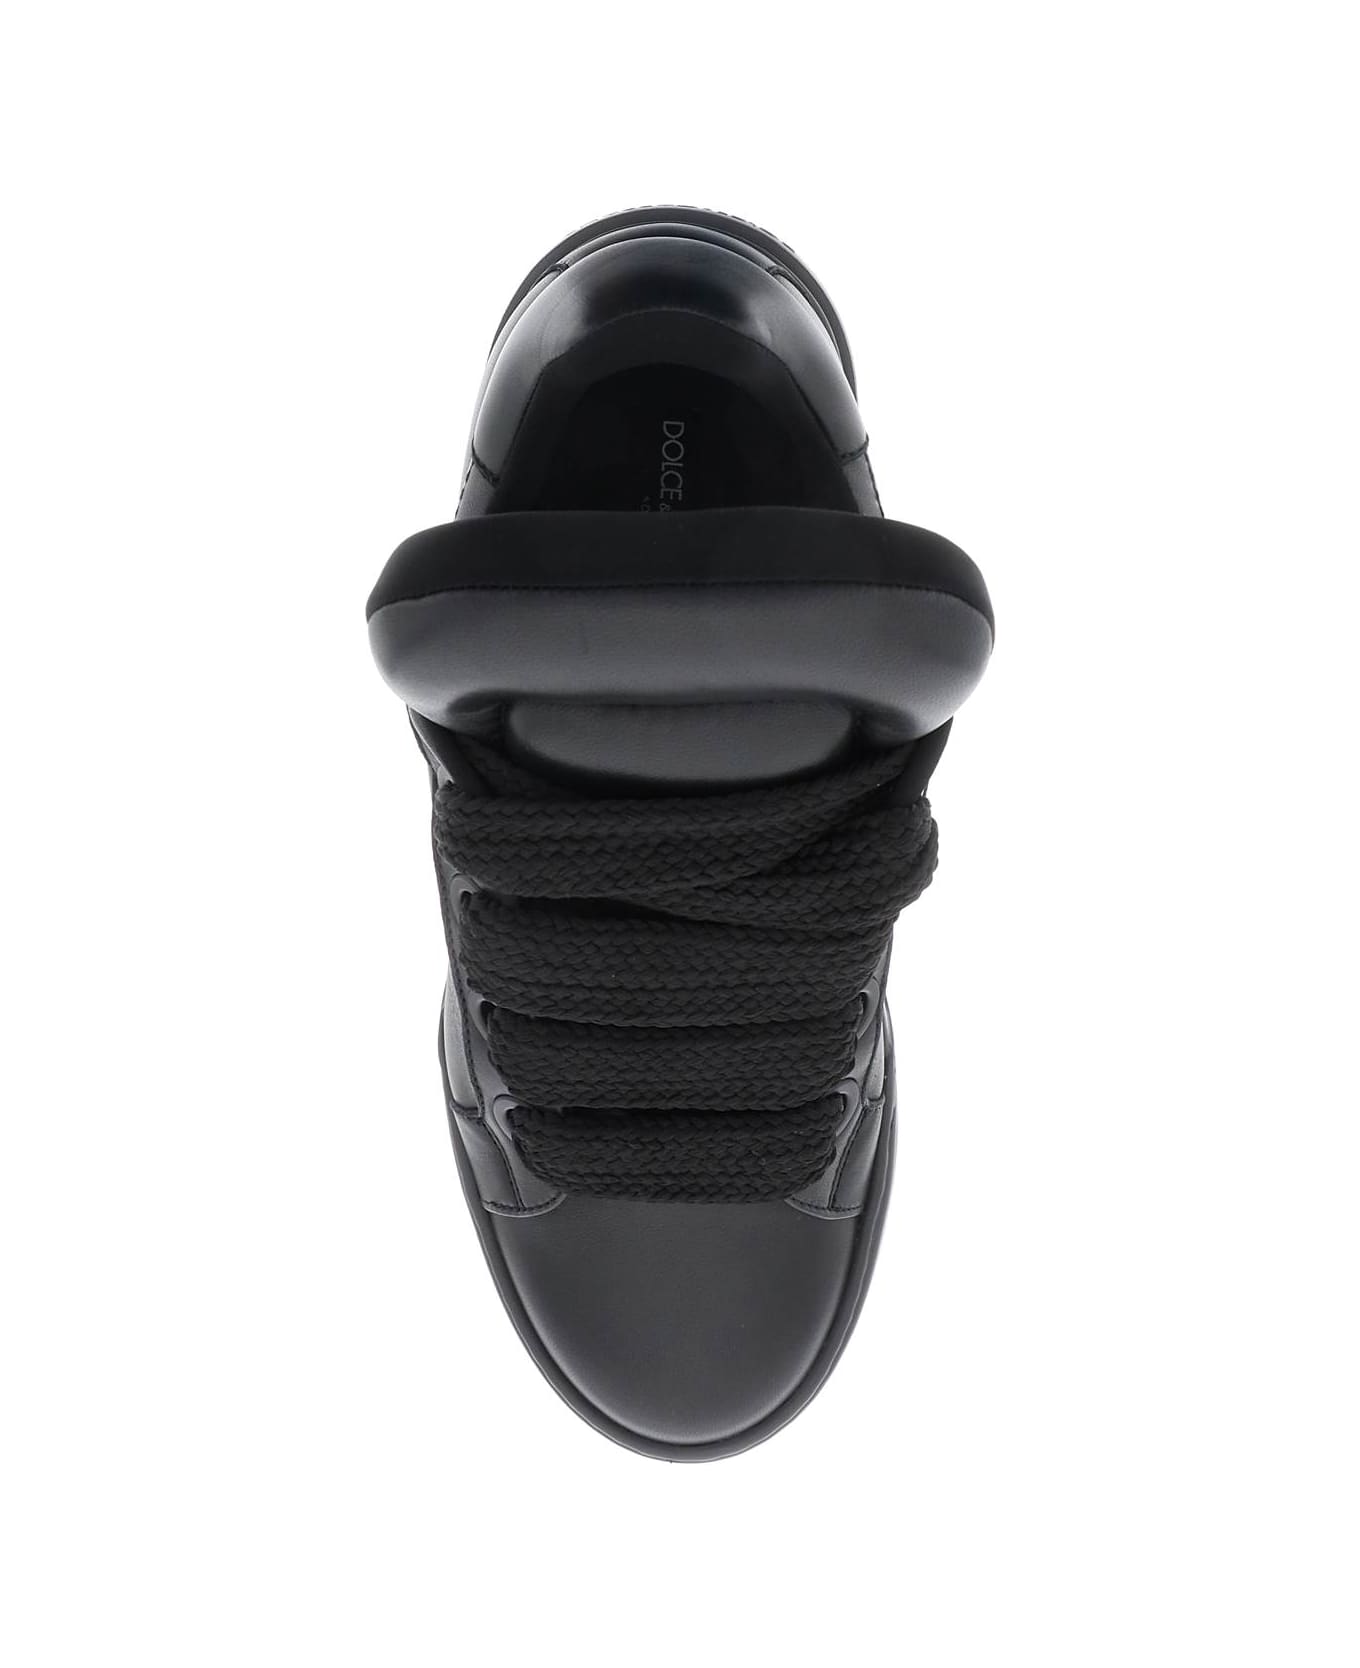 Dolce & Gabbana Mega Skate Sneakers - Black